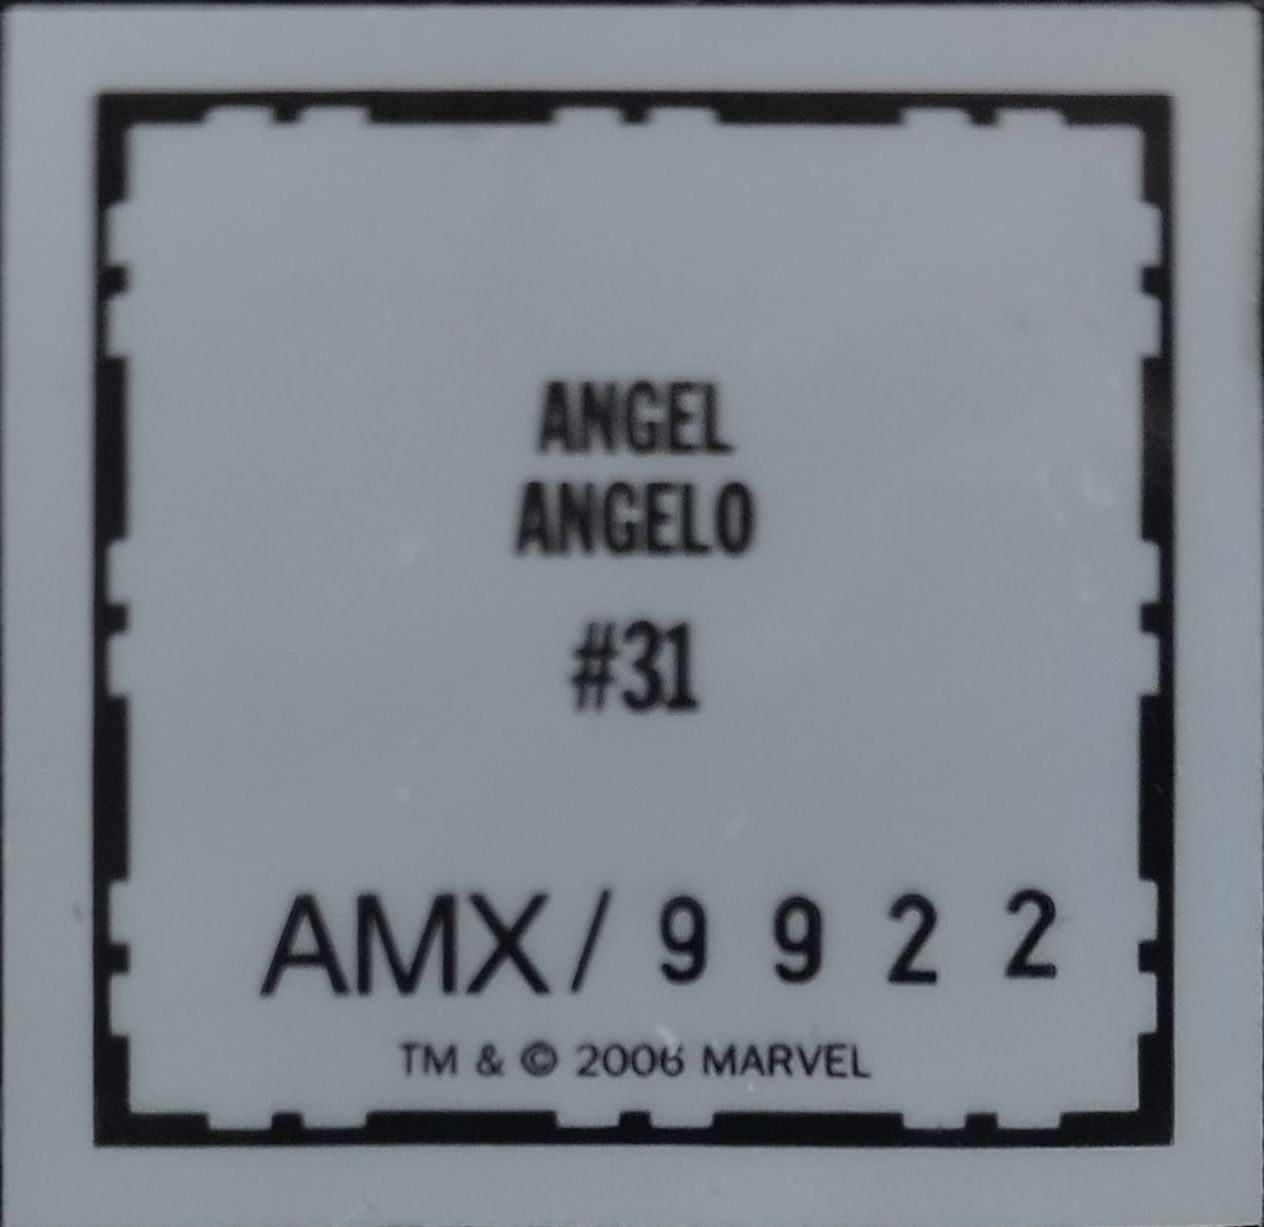 Figurka Marvel klasyczna Angel #31 ok 8 cm figurka ciężka ołów